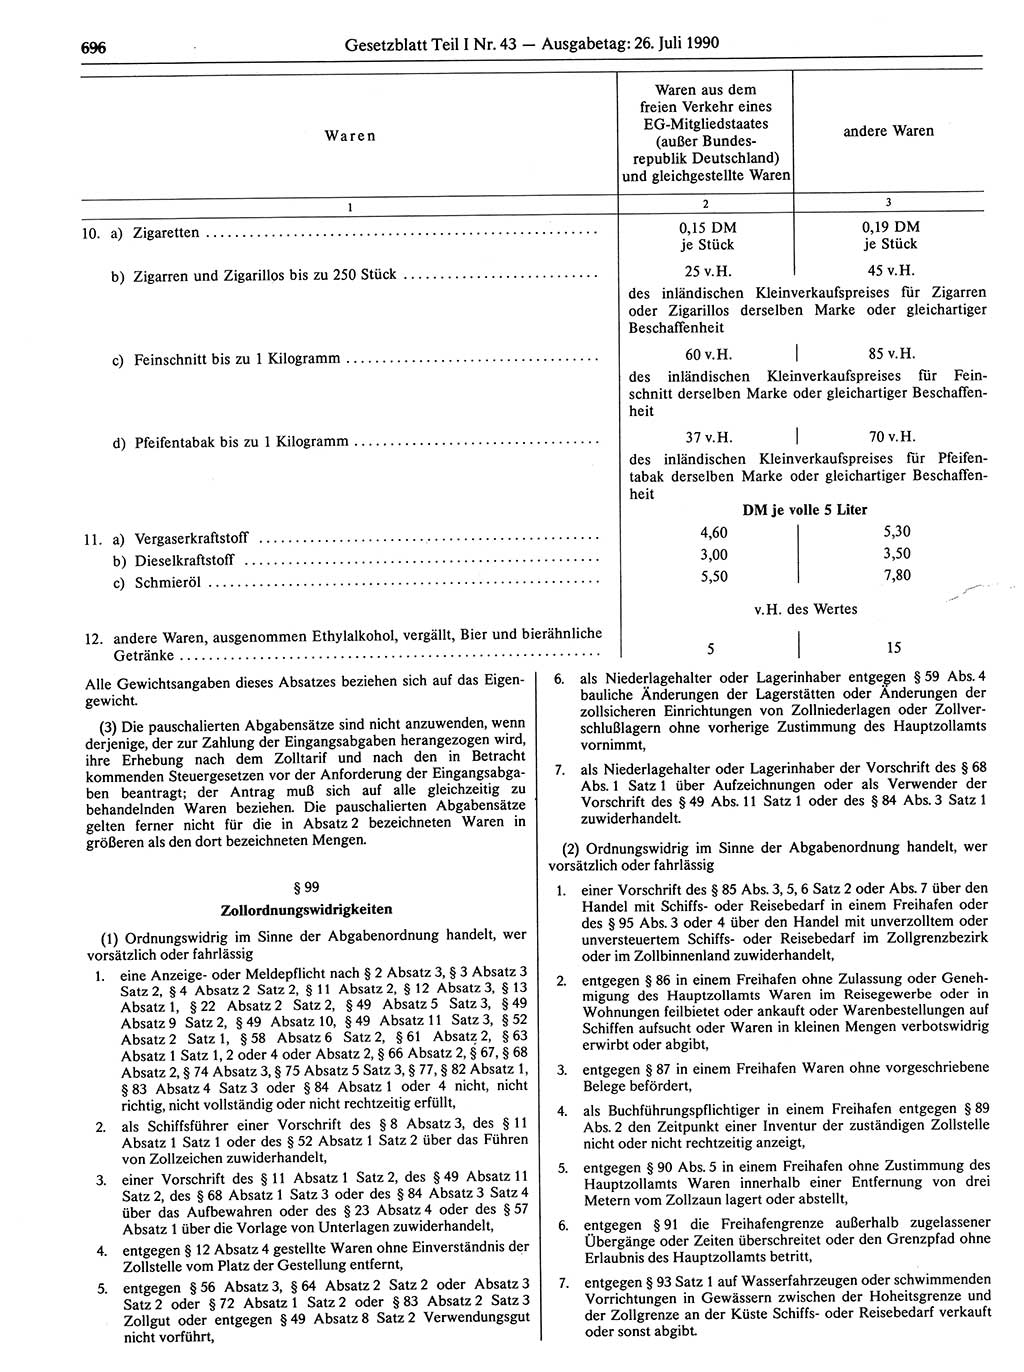 Gesetzblatt (GBl.) der Deutschen Demokratischen Republik (DDR) Teil Ⅰ 1990, Seite 696 (GBl. DDR Ⅰ 1990, S. 696)